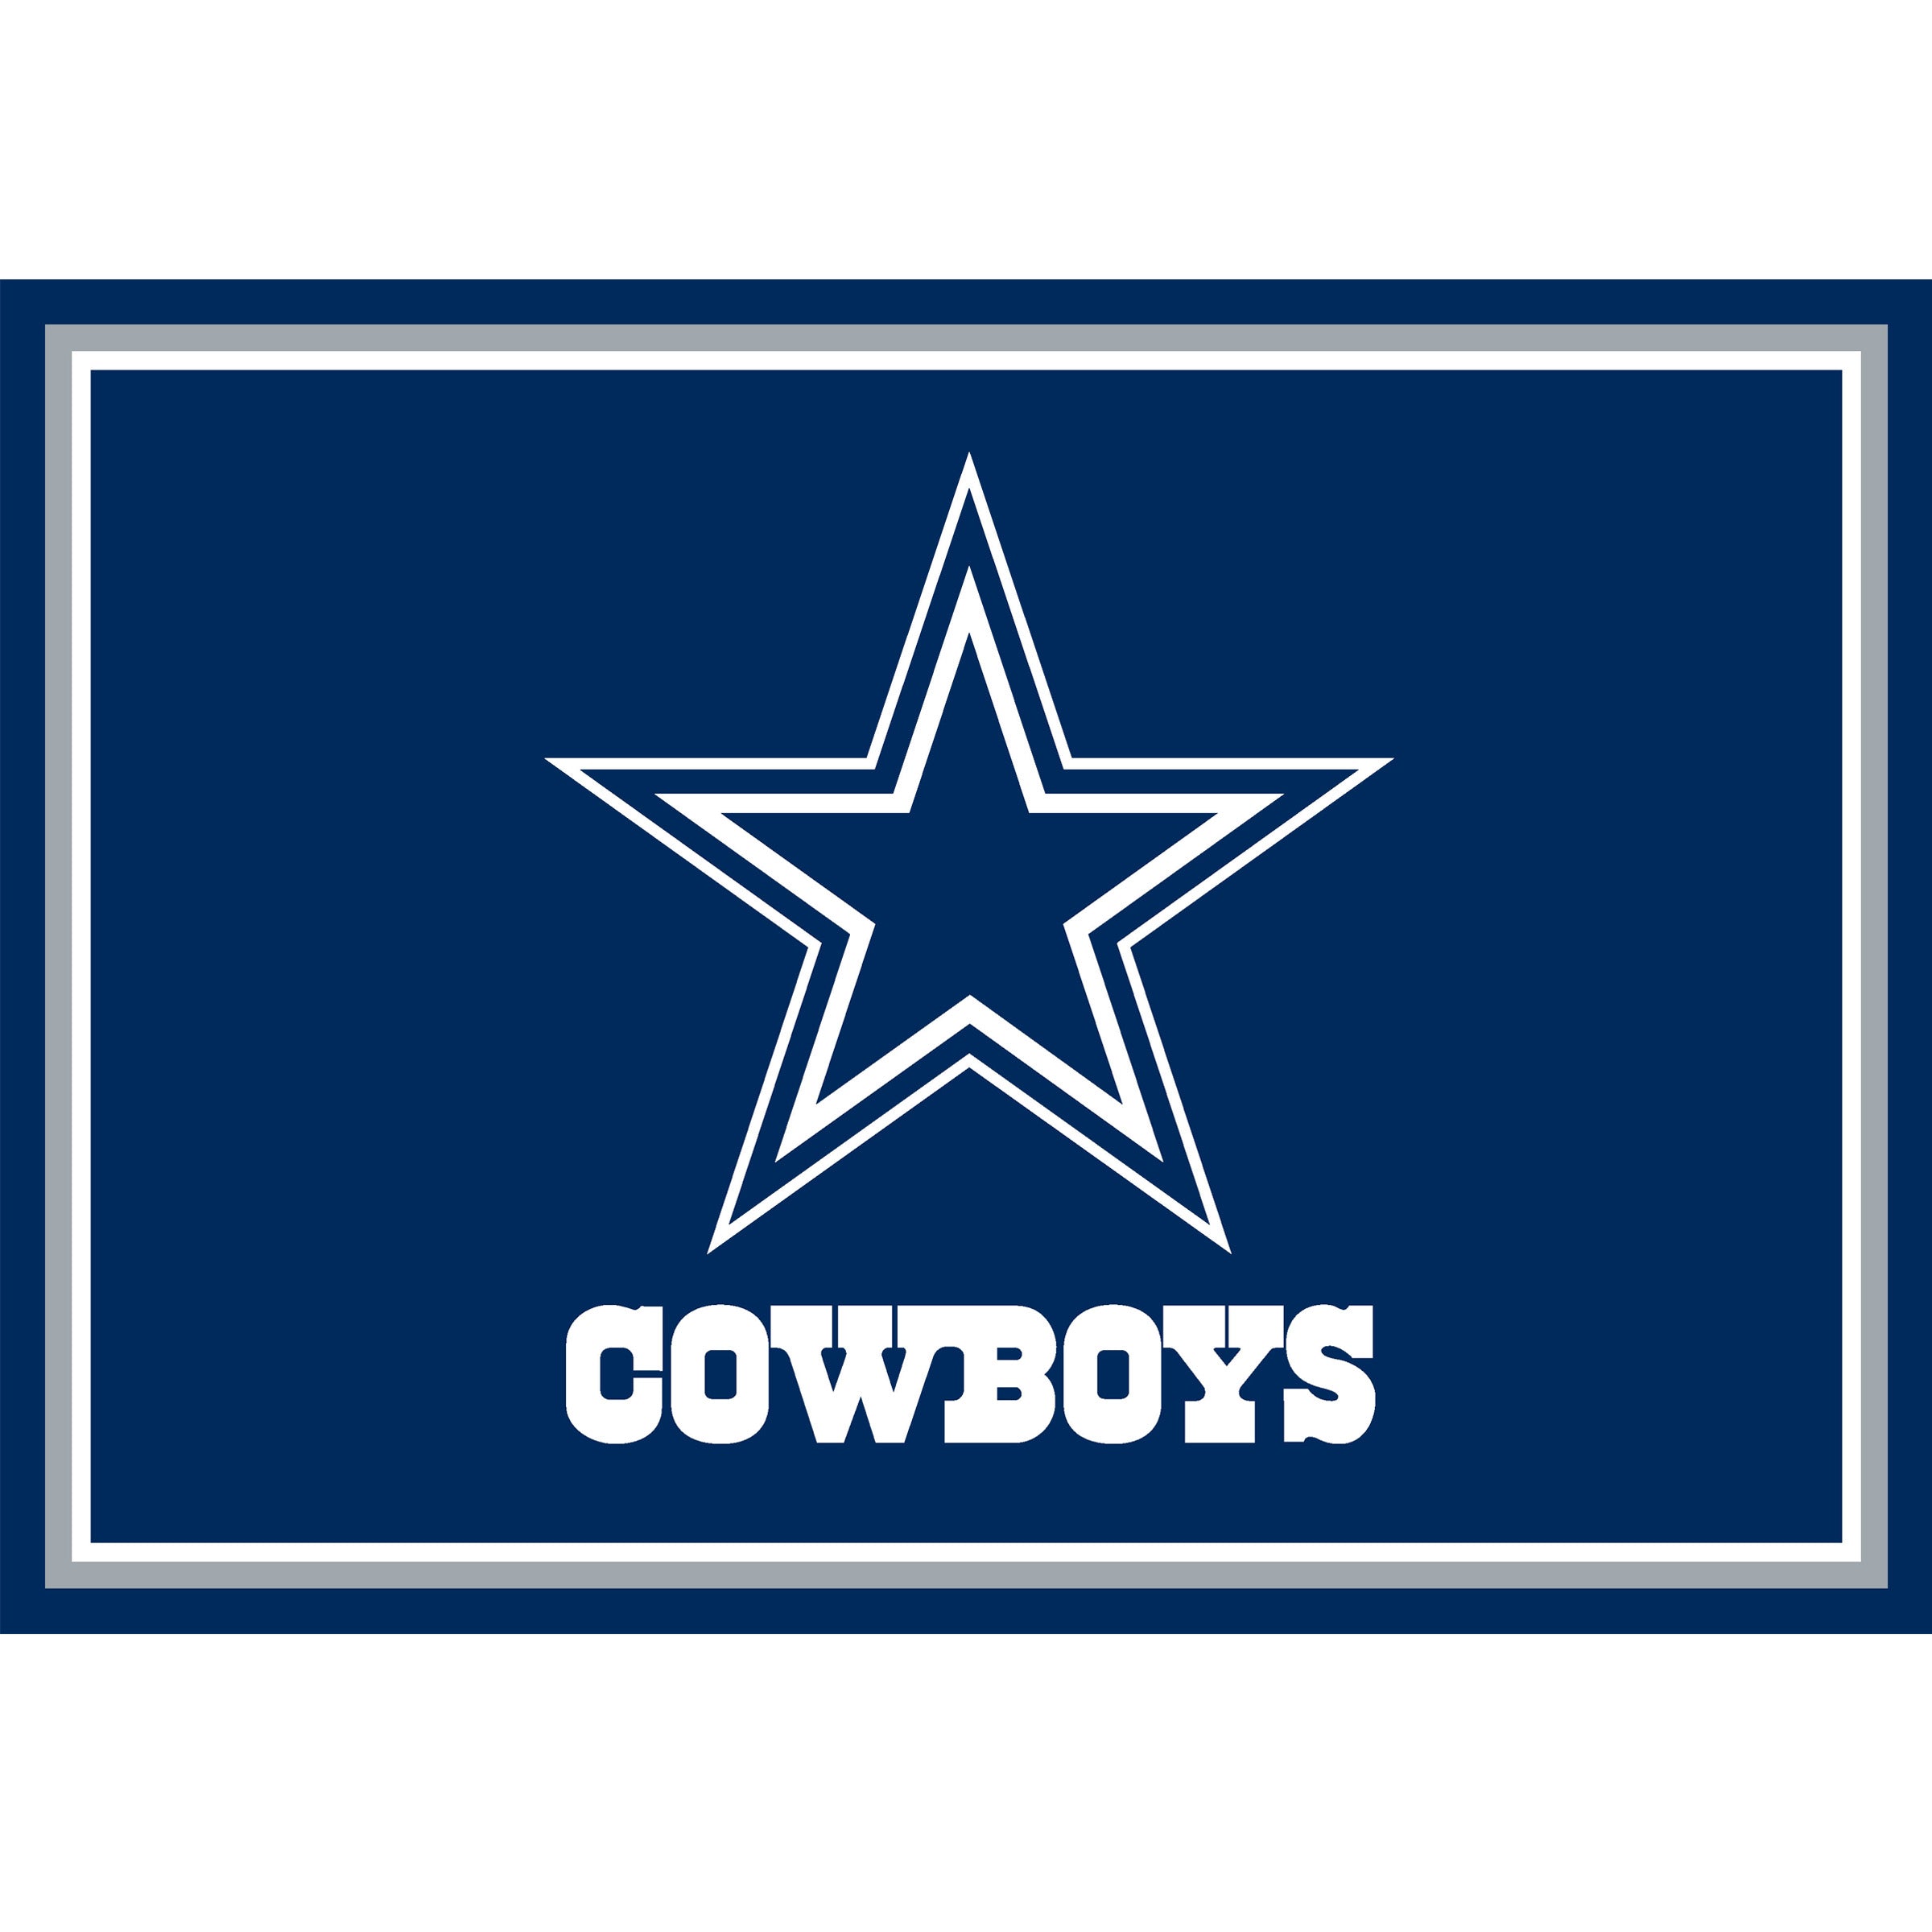 Dallas Cowboys Team